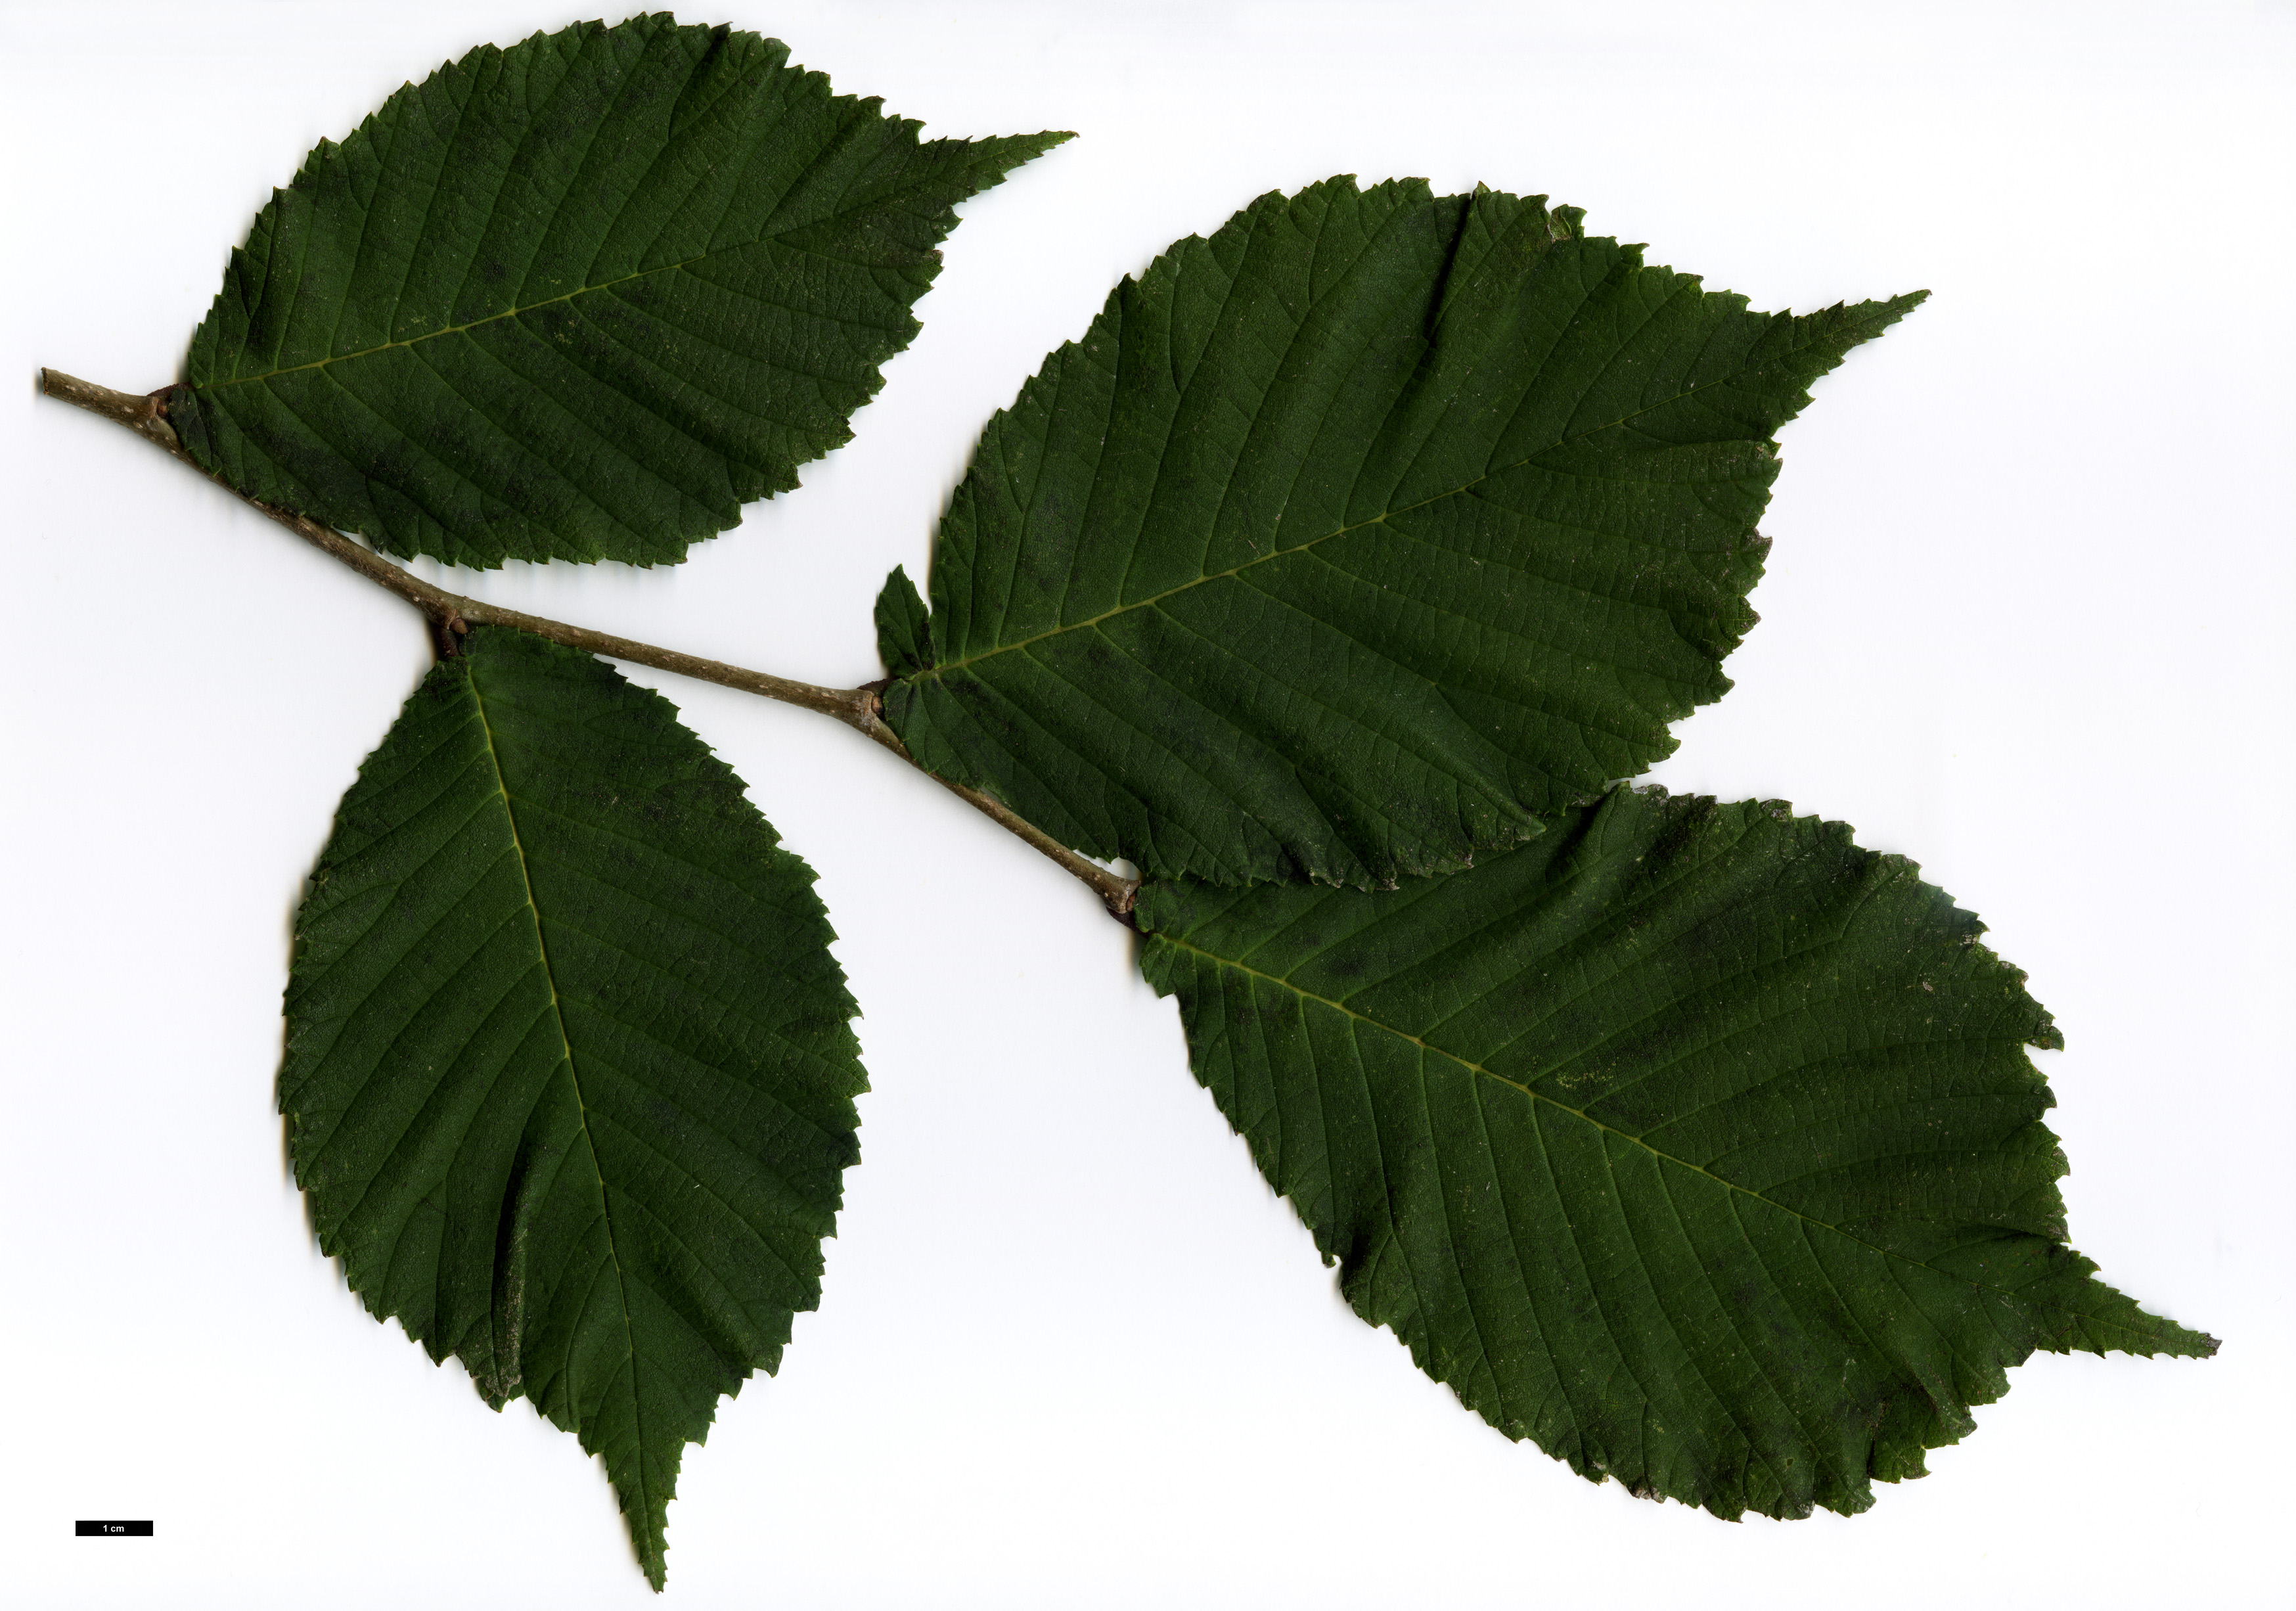 High resolution image: Family: Ulmaceae - Genus: Ulmus - Taxon: laciniata - SpeciesSub: var. nikkoensis